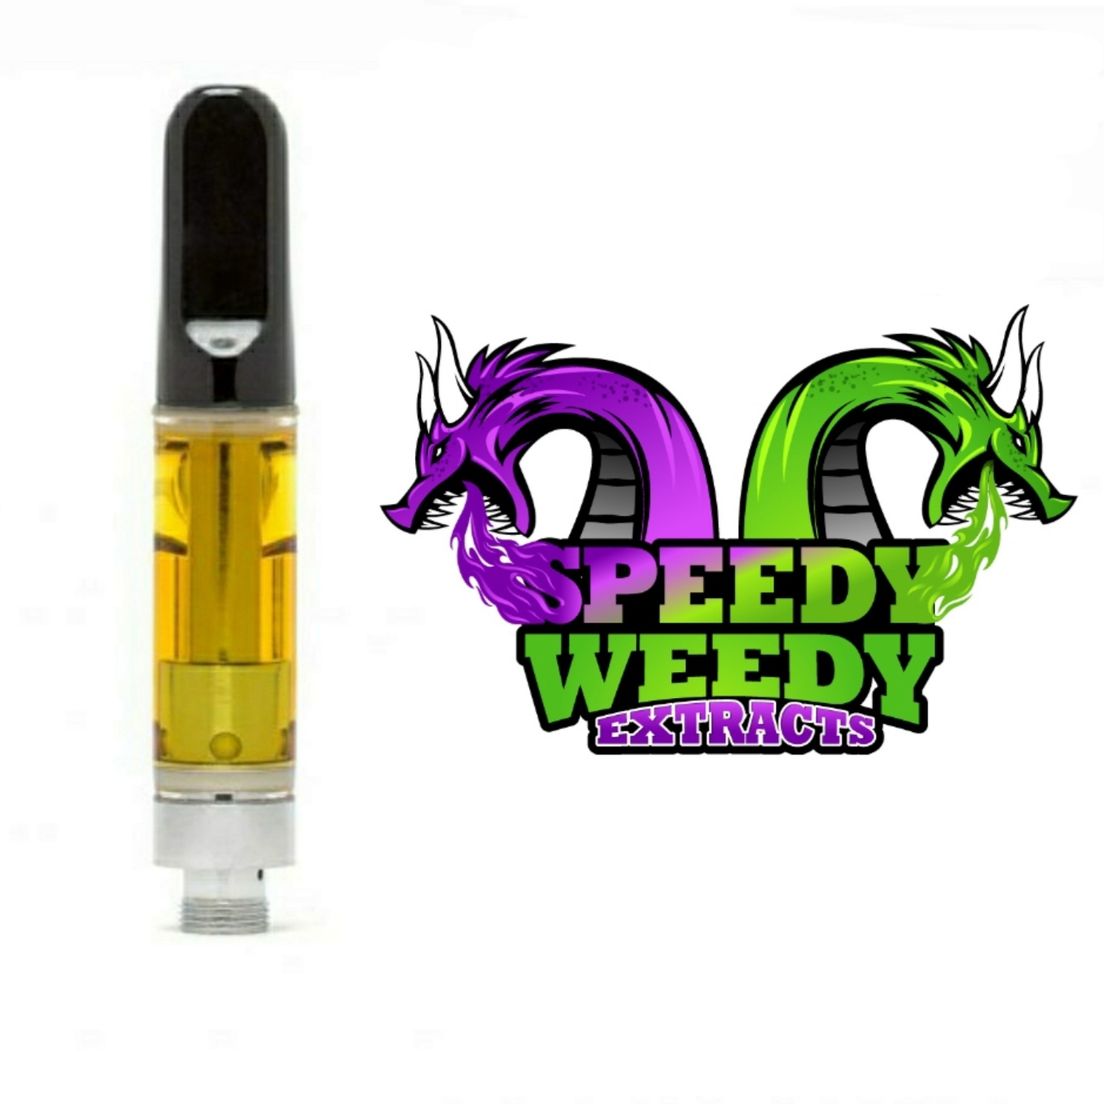 1. Speedy Weedy 1g Cartridge - Skywalker OG - 3/$60 Mix/Match